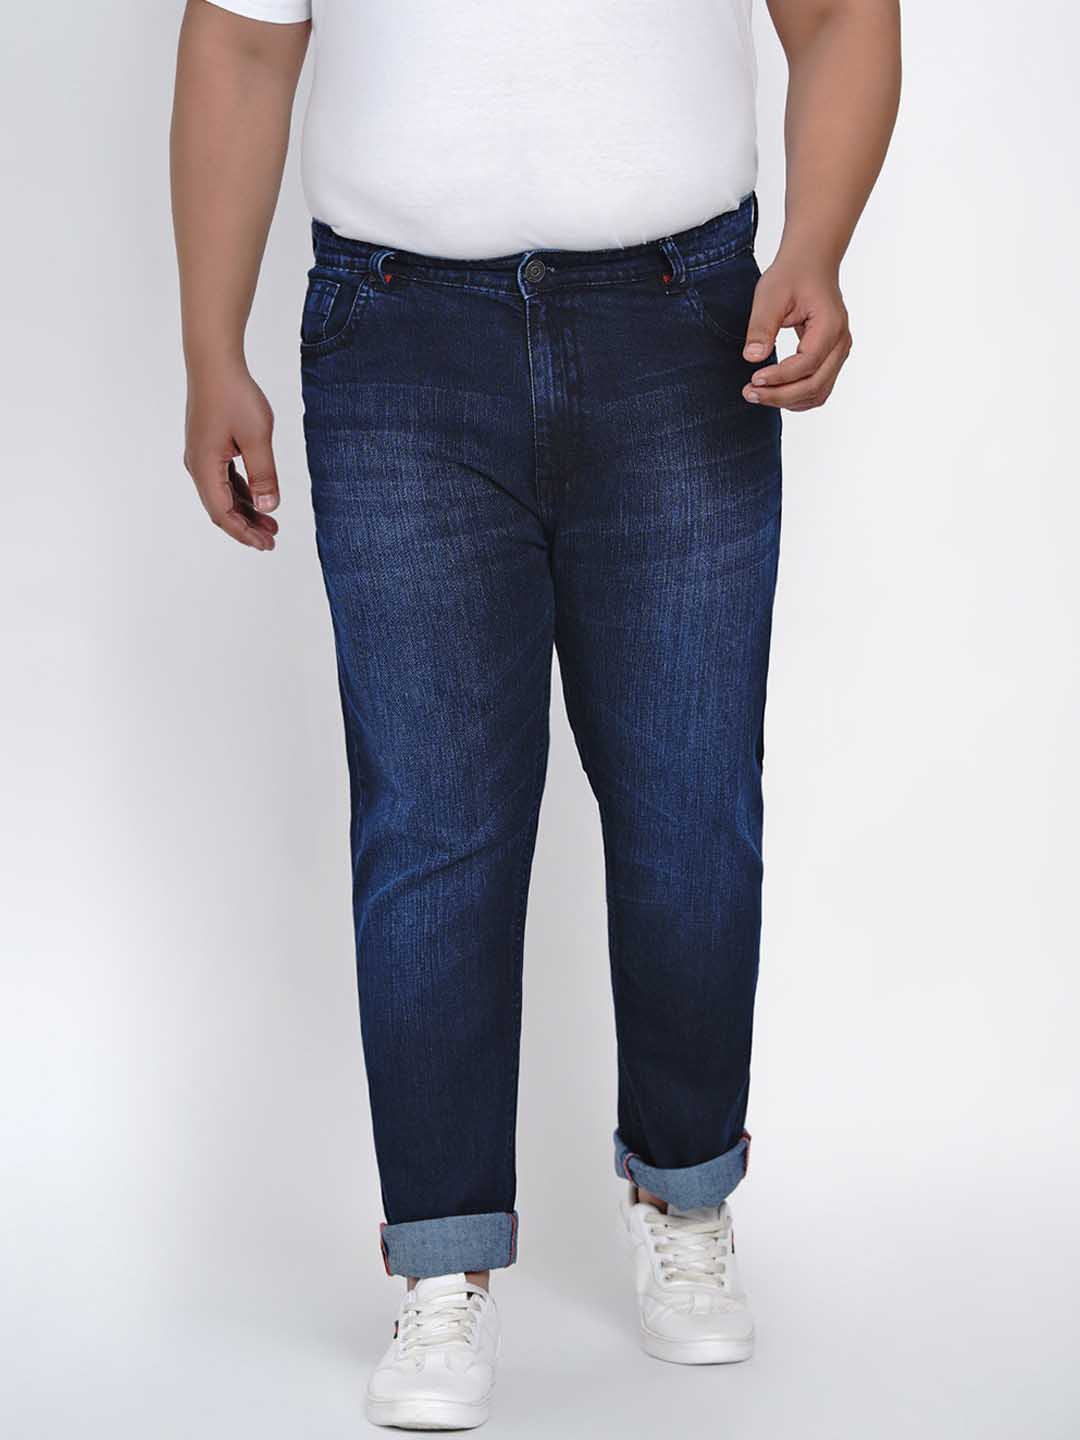 affordables/jeans/JPJ2006/jpj2006-2.jpg